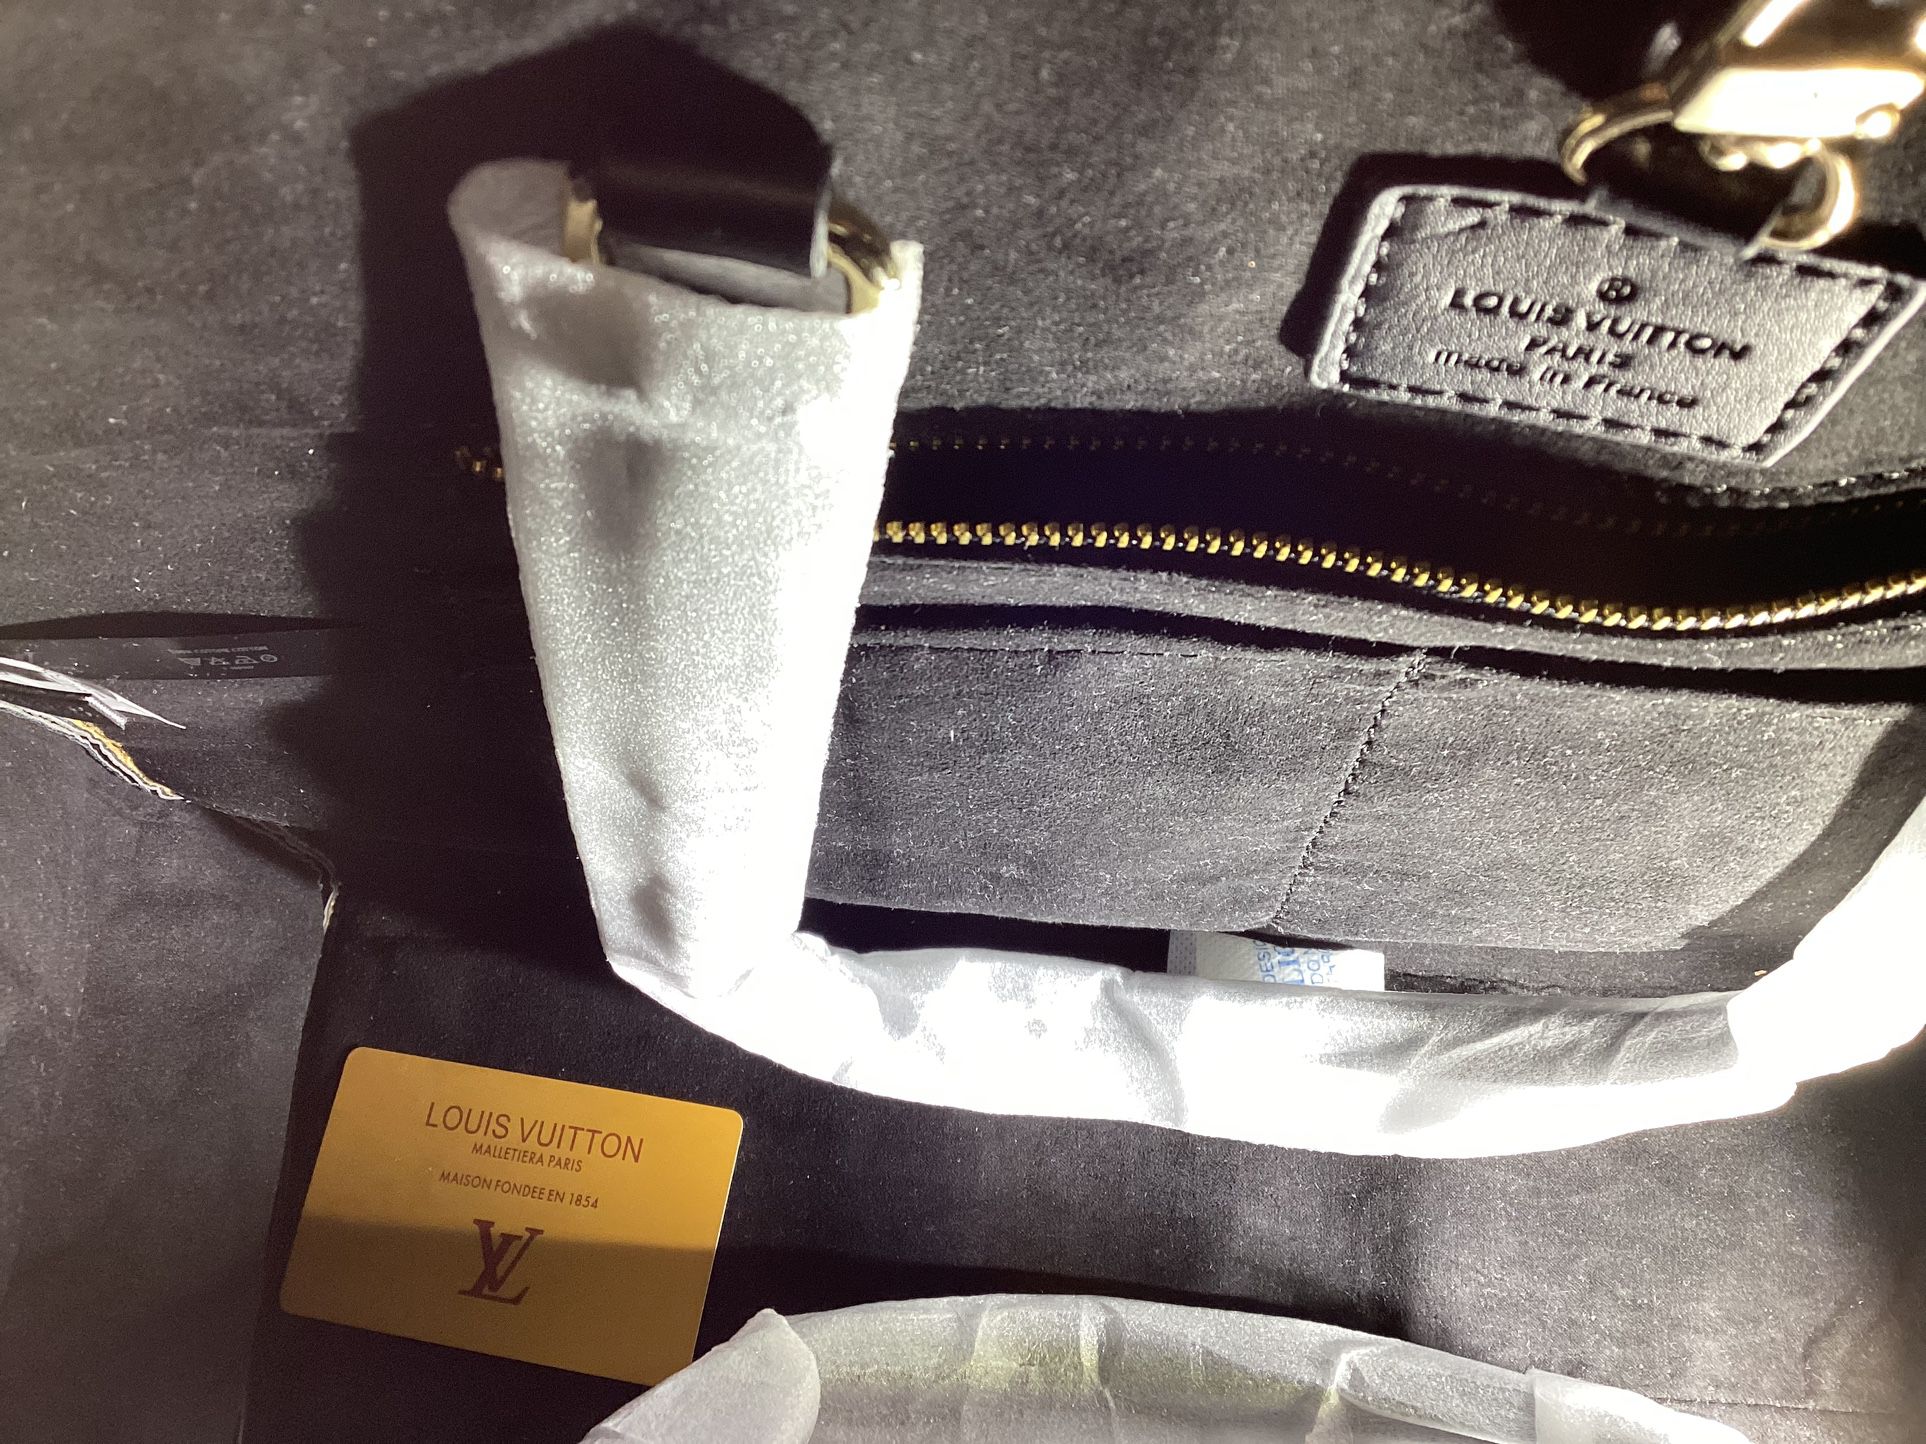 2018 Louis Vuitton Malletiera Paris En 1854 (Hand Bag ) for Sale in